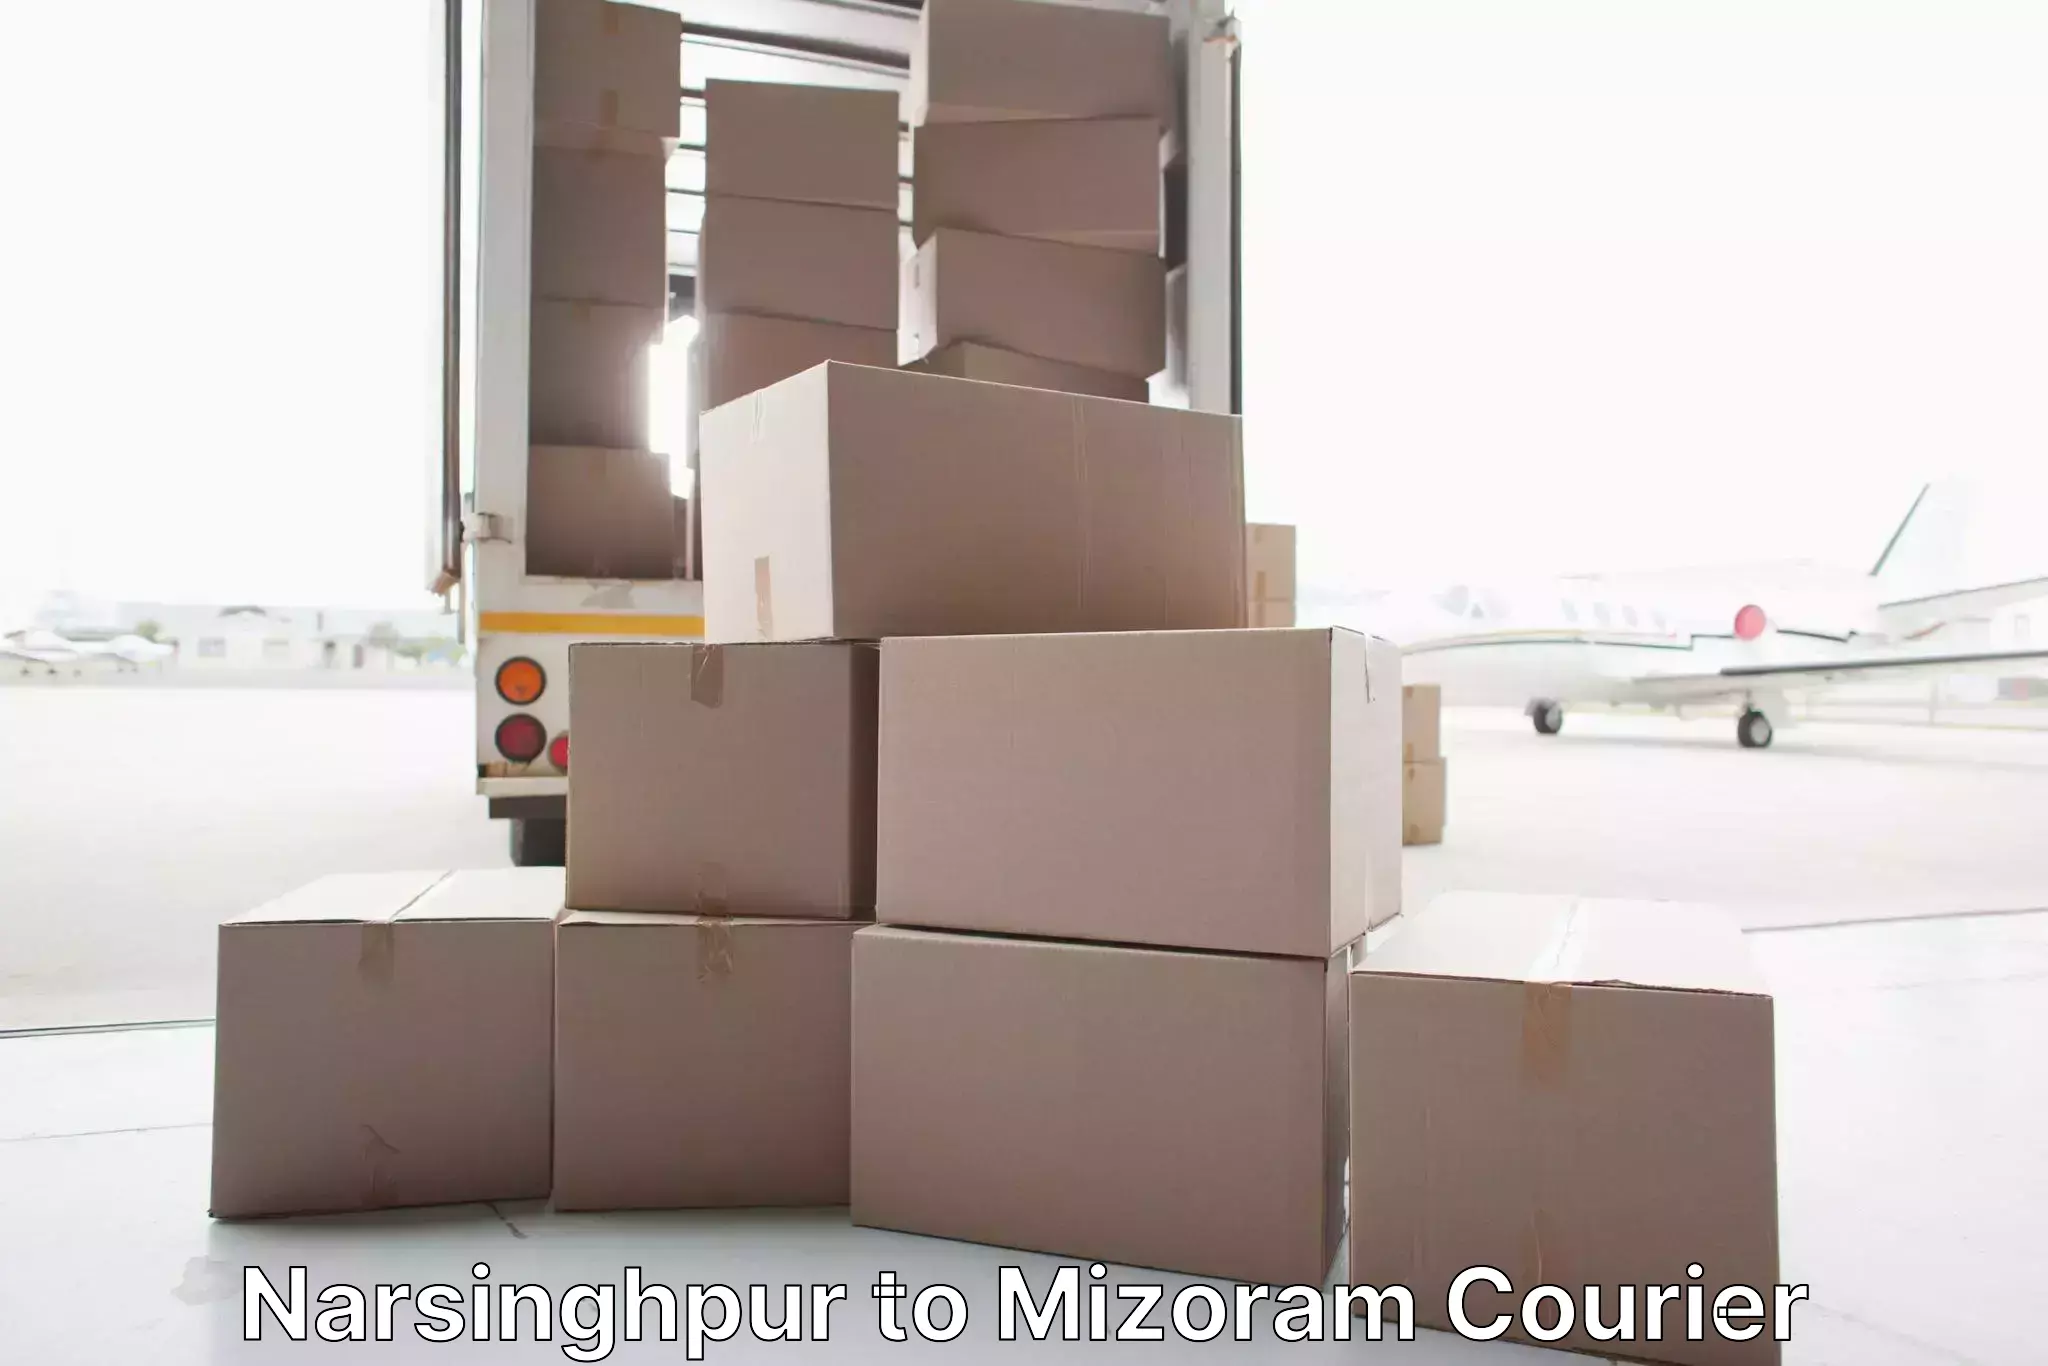 High-quality moving services Narsinghpur to Mizoram